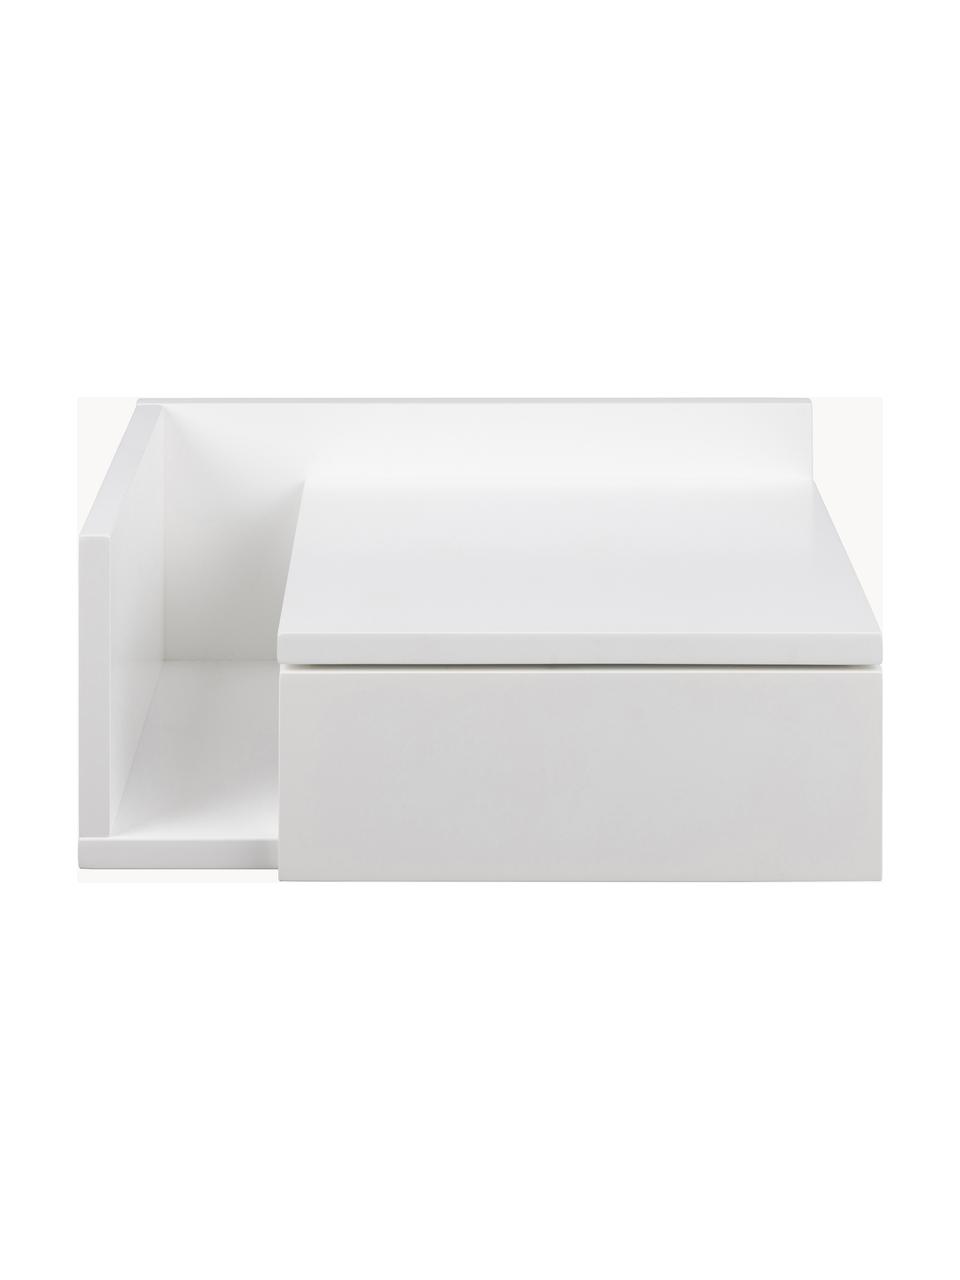 Ścienna szafka nocna Ashlan, Płyta pilśniowa średniej gęstości (MDF) lakierowana, Biały, S 40 x W 17 cm